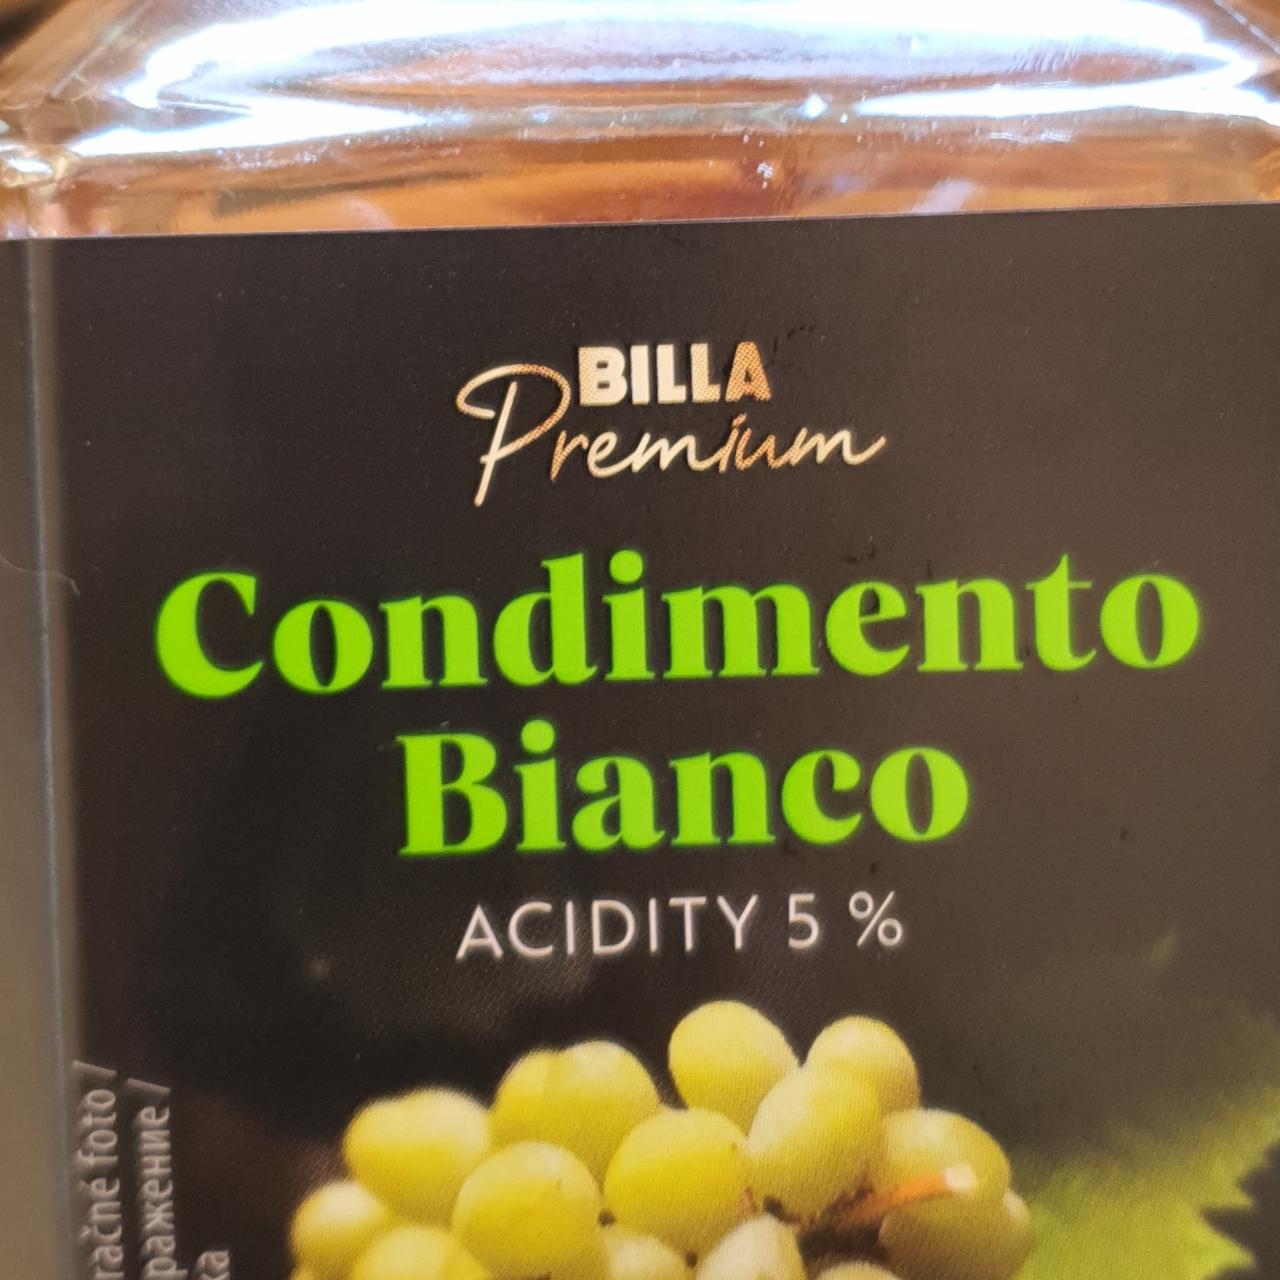 Fotografie - Condimento Bianco Billa Premium